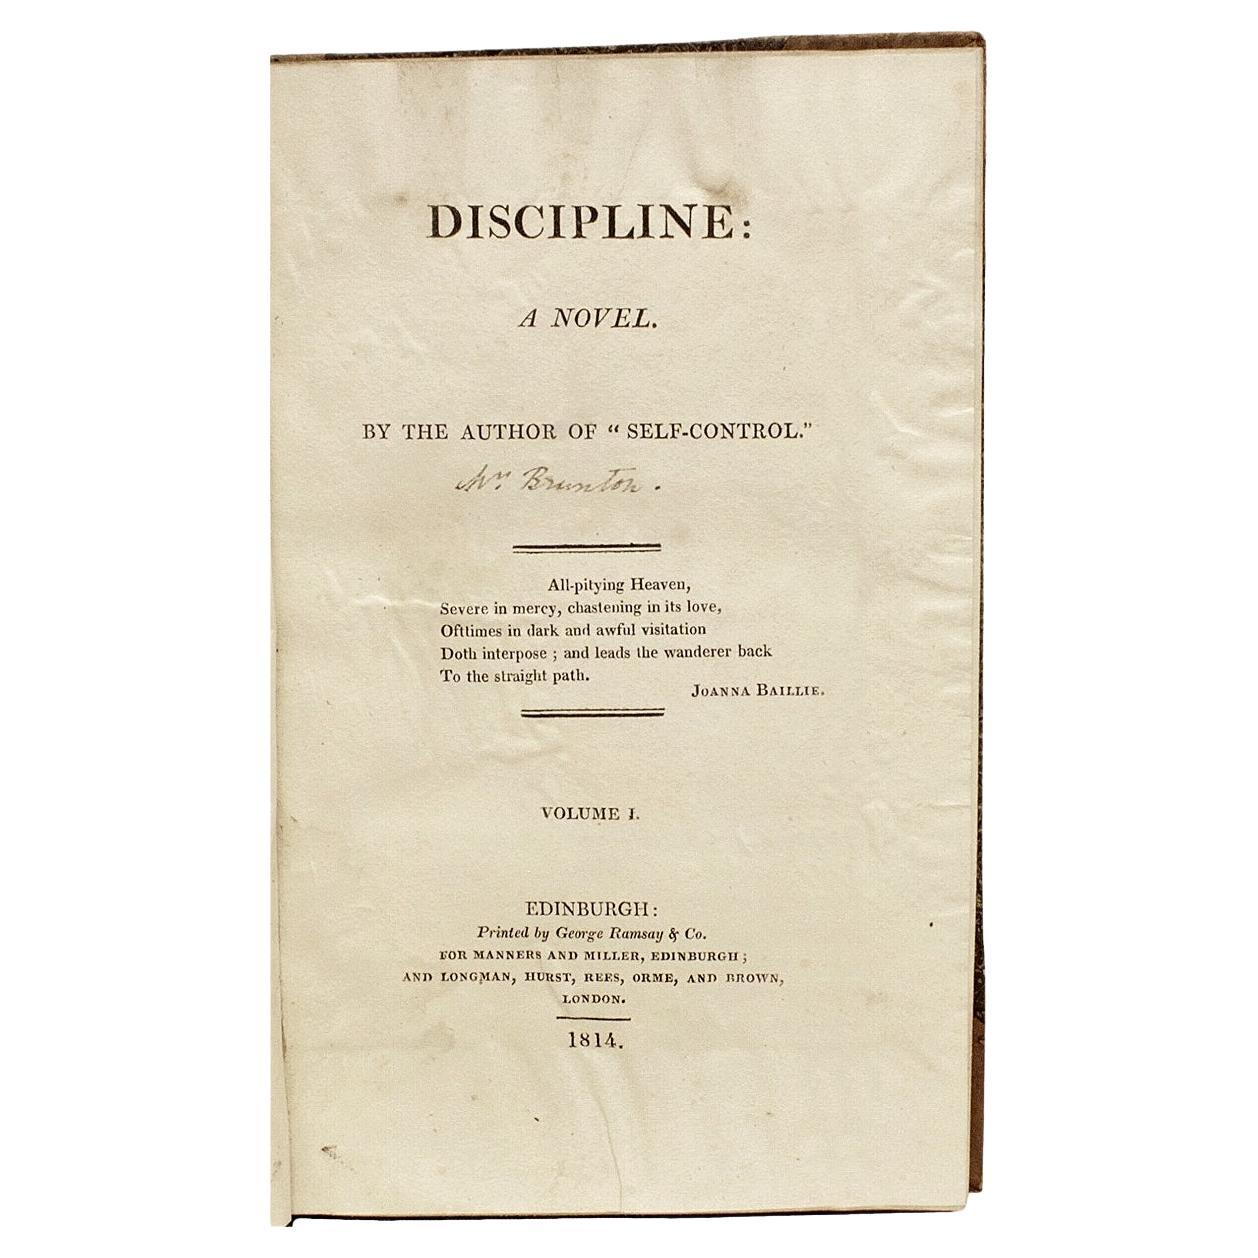 Mary Brunton, Disziplin, Erstausgabe, 1814, 3 Bände